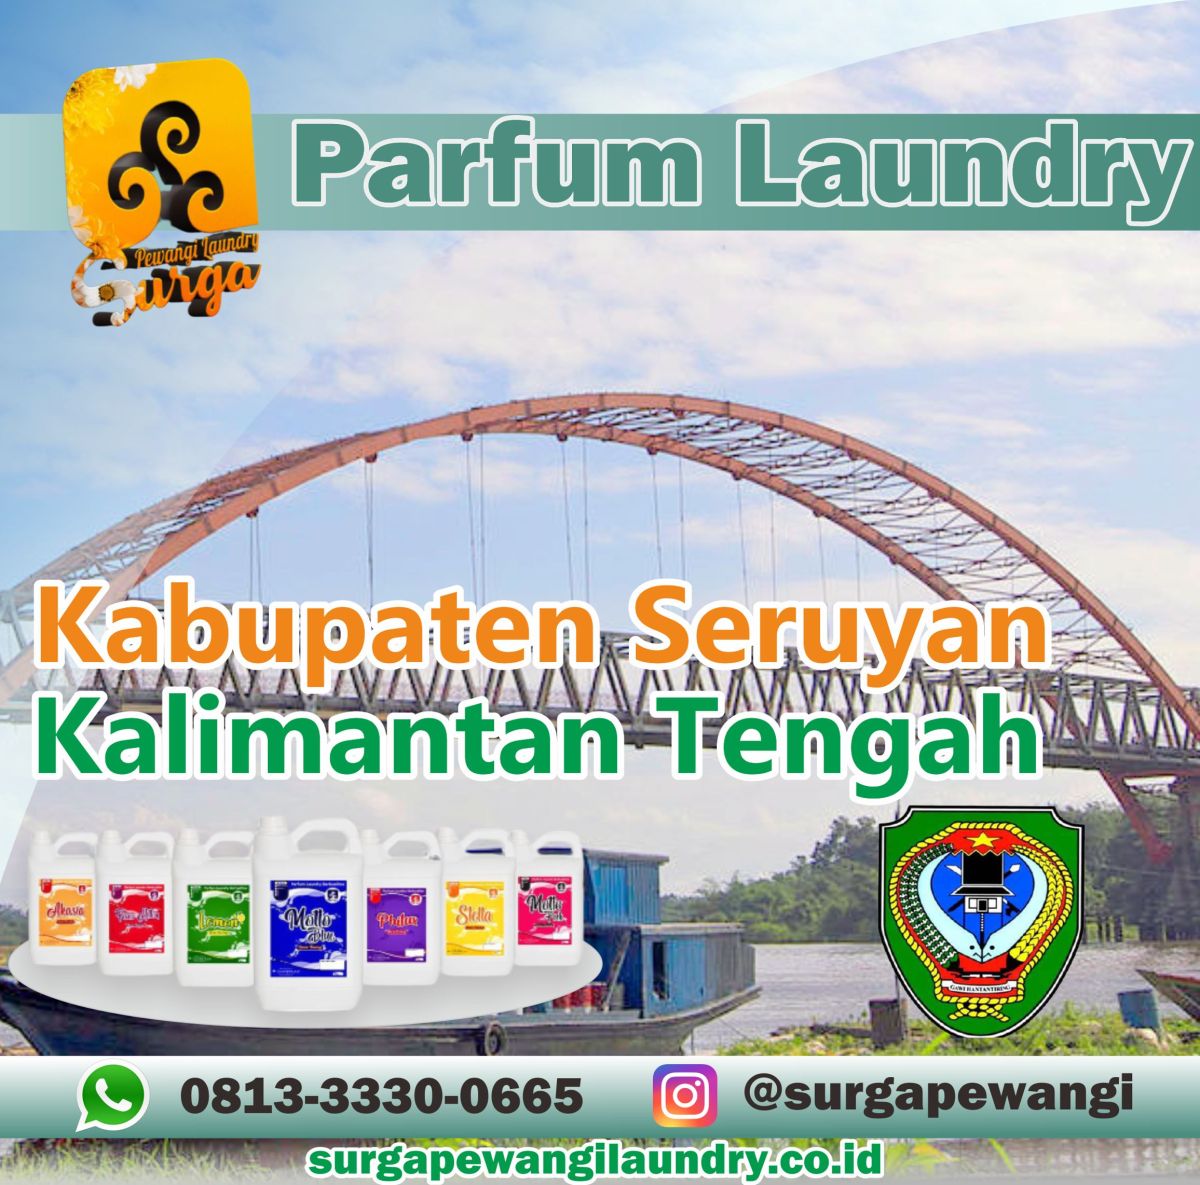 Parfum Laundry Kabupaten Seruyan, Kalimantan Tengah